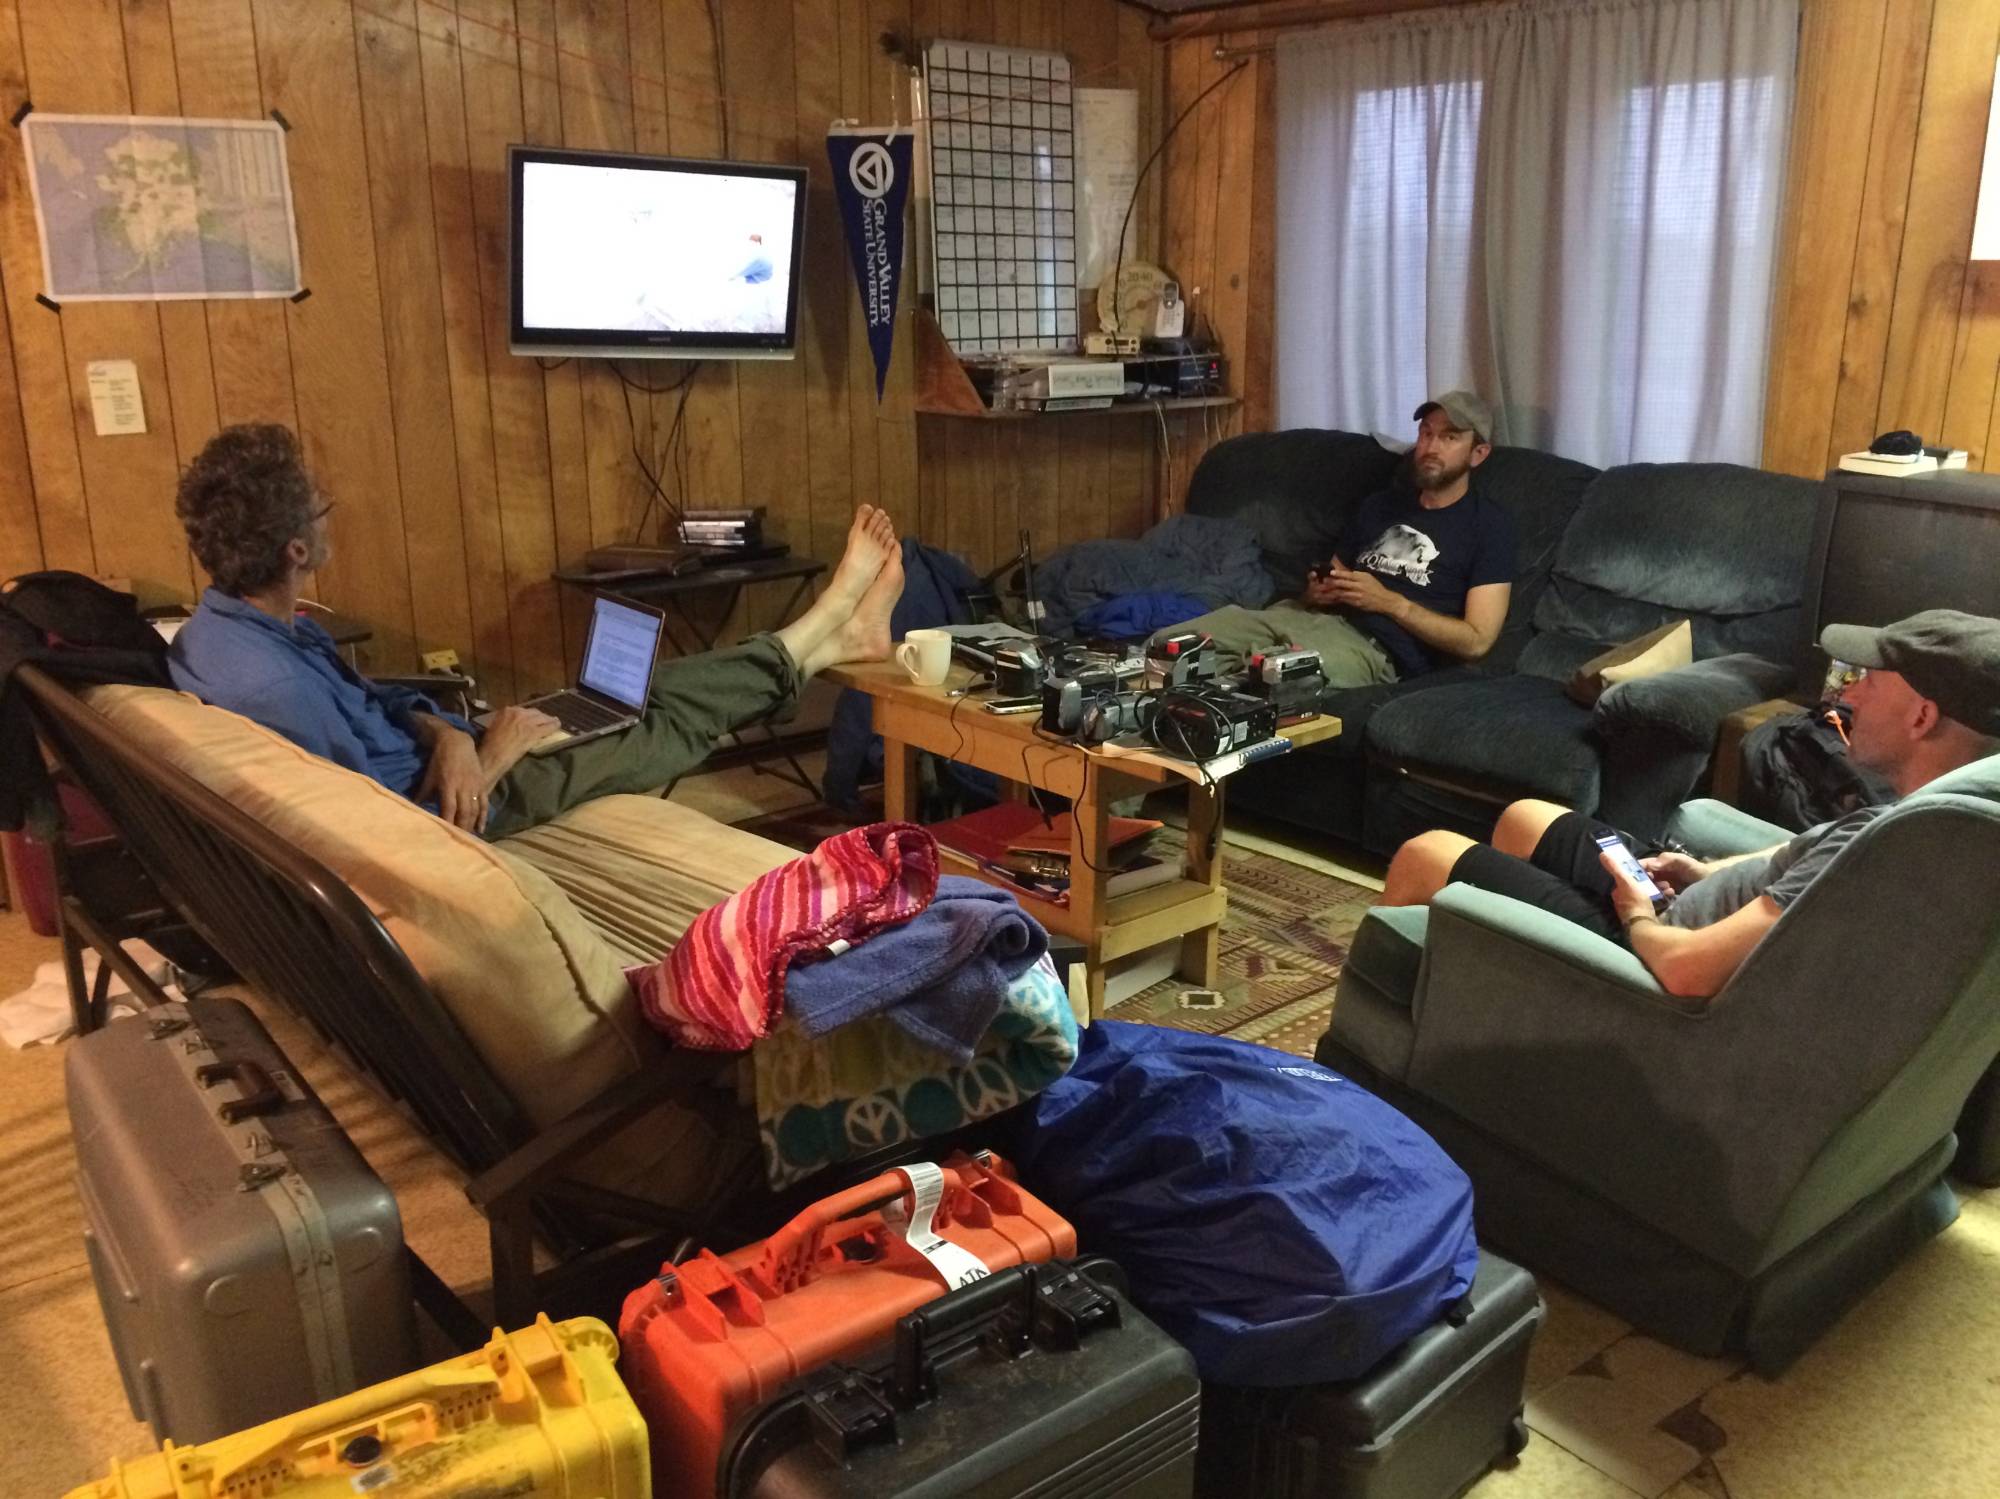 Members sit in the living room.